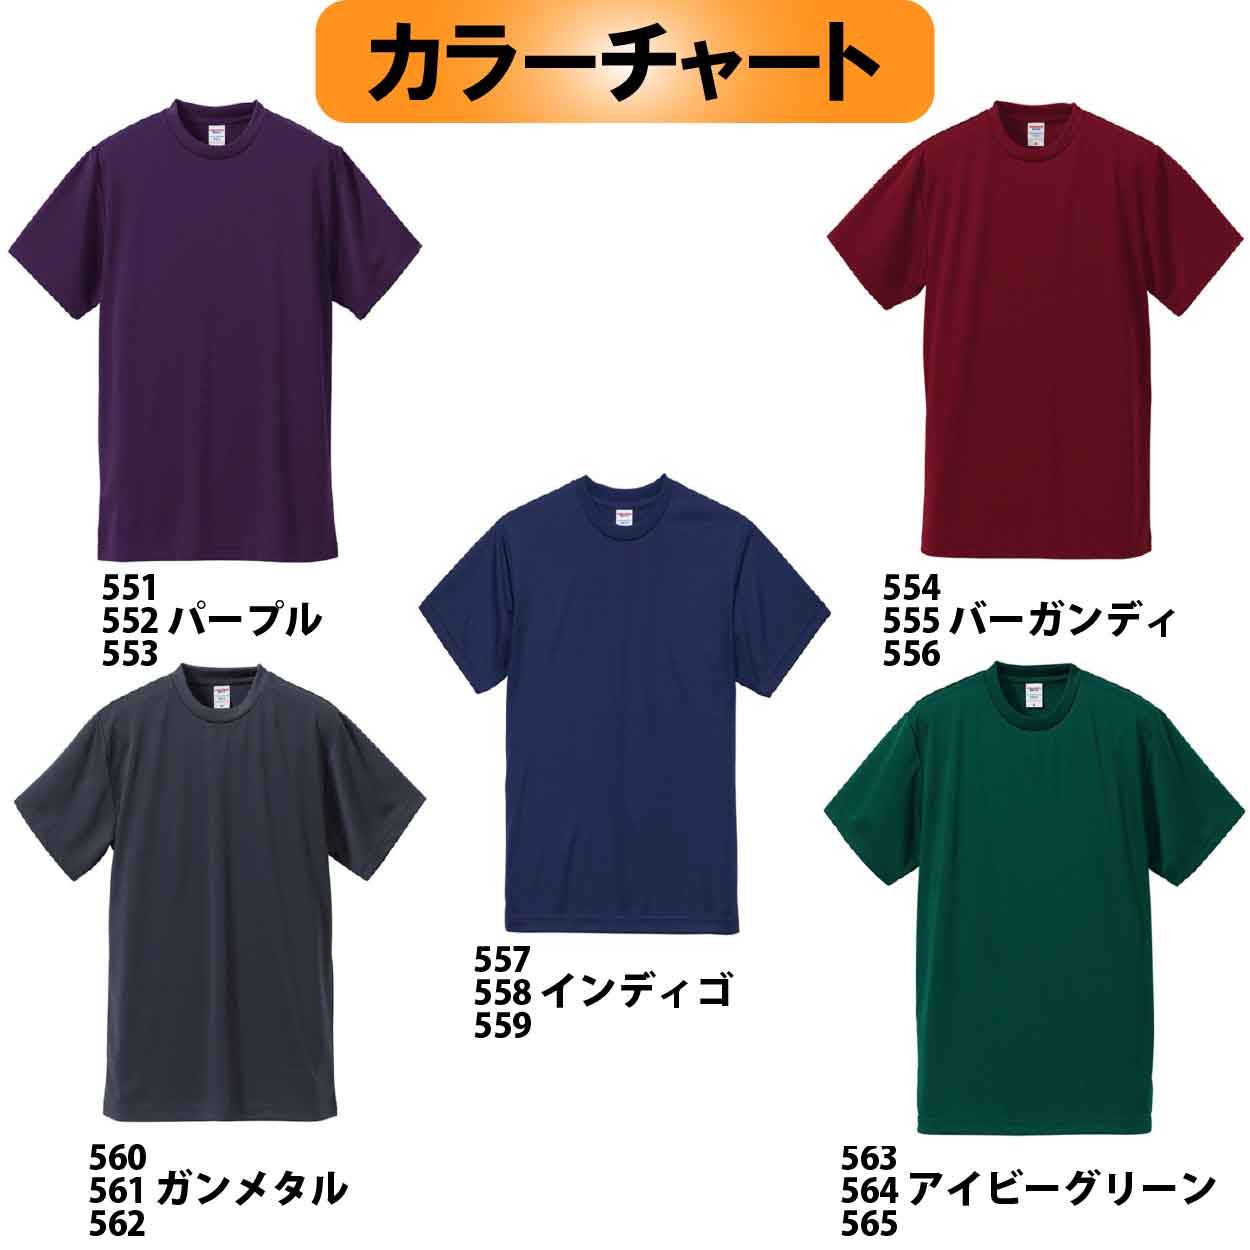 【在庫限り】５５４　JOKERオリジナル刺繍Tシャツ　M カラー:バーガンディ【限定生産】画像